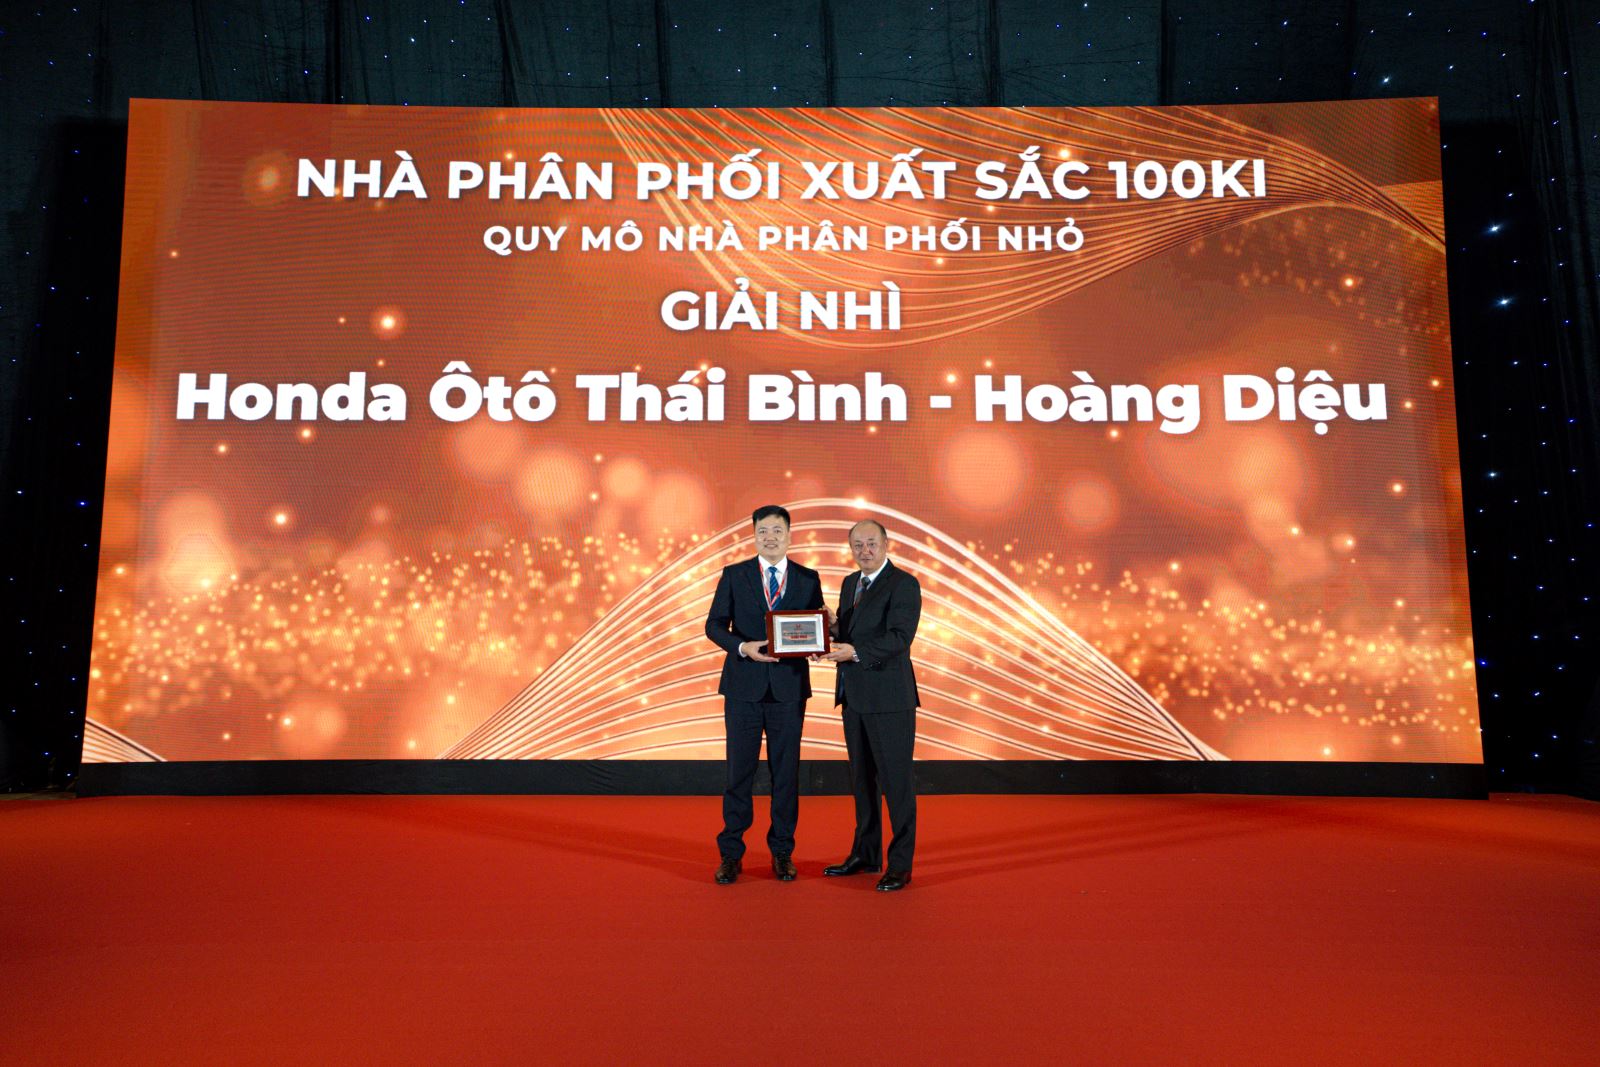 Chúc mừng Honda Ôtô Thái Bình - Hoàng Diệu vinh dự đạt Hạng Nhì Thi Đua Nhà Phân Phối Honda Xuất Sắc 100Ki